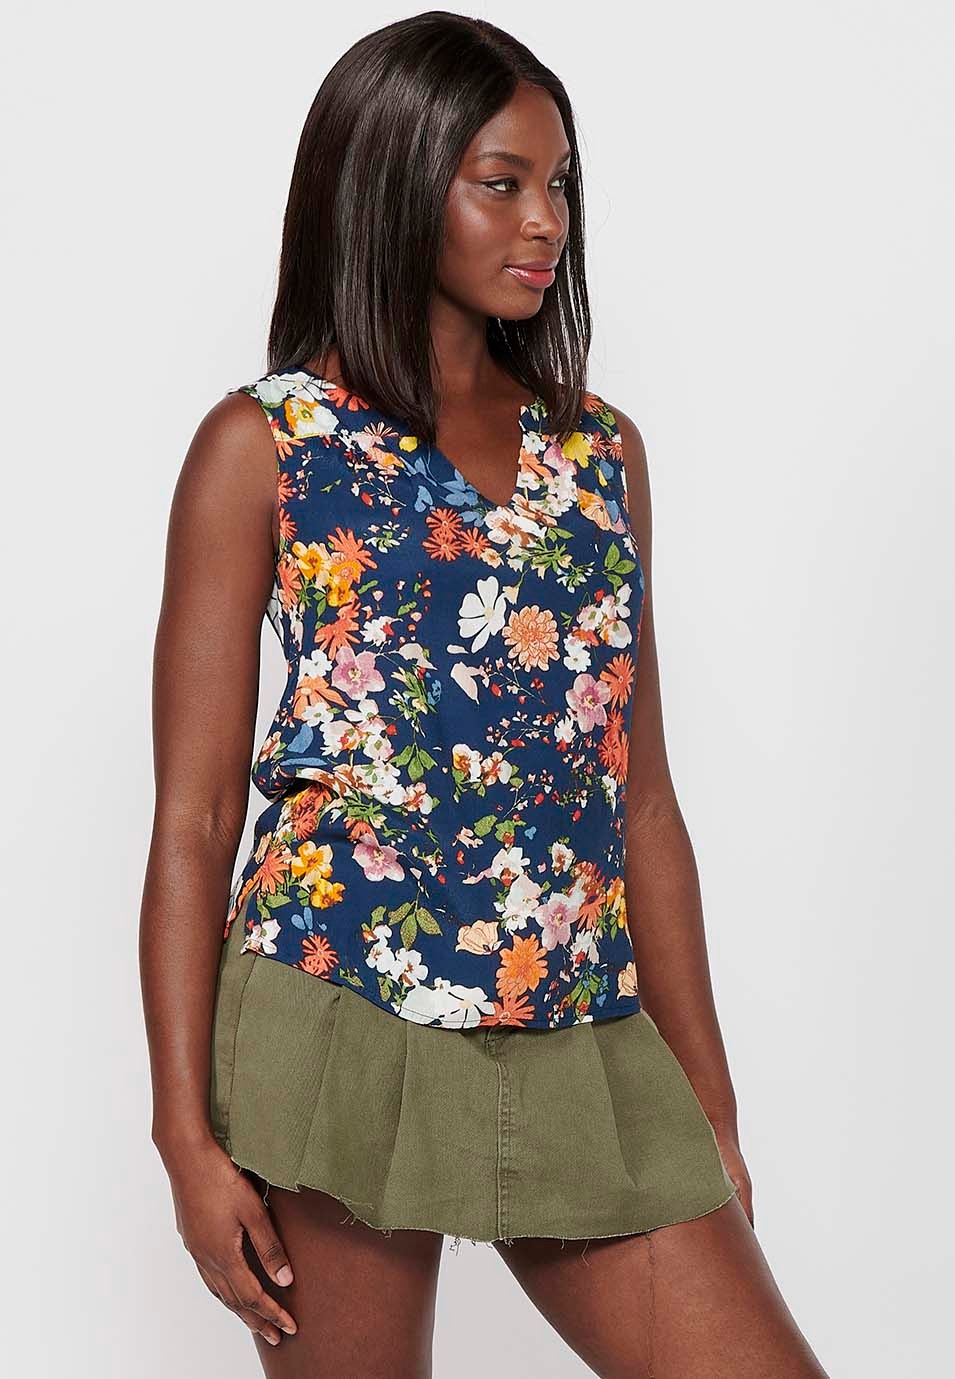 Chemisier sans manches pour femmes, imprimé Floral multicolore, fermeture sur le devant, Style chemise 5